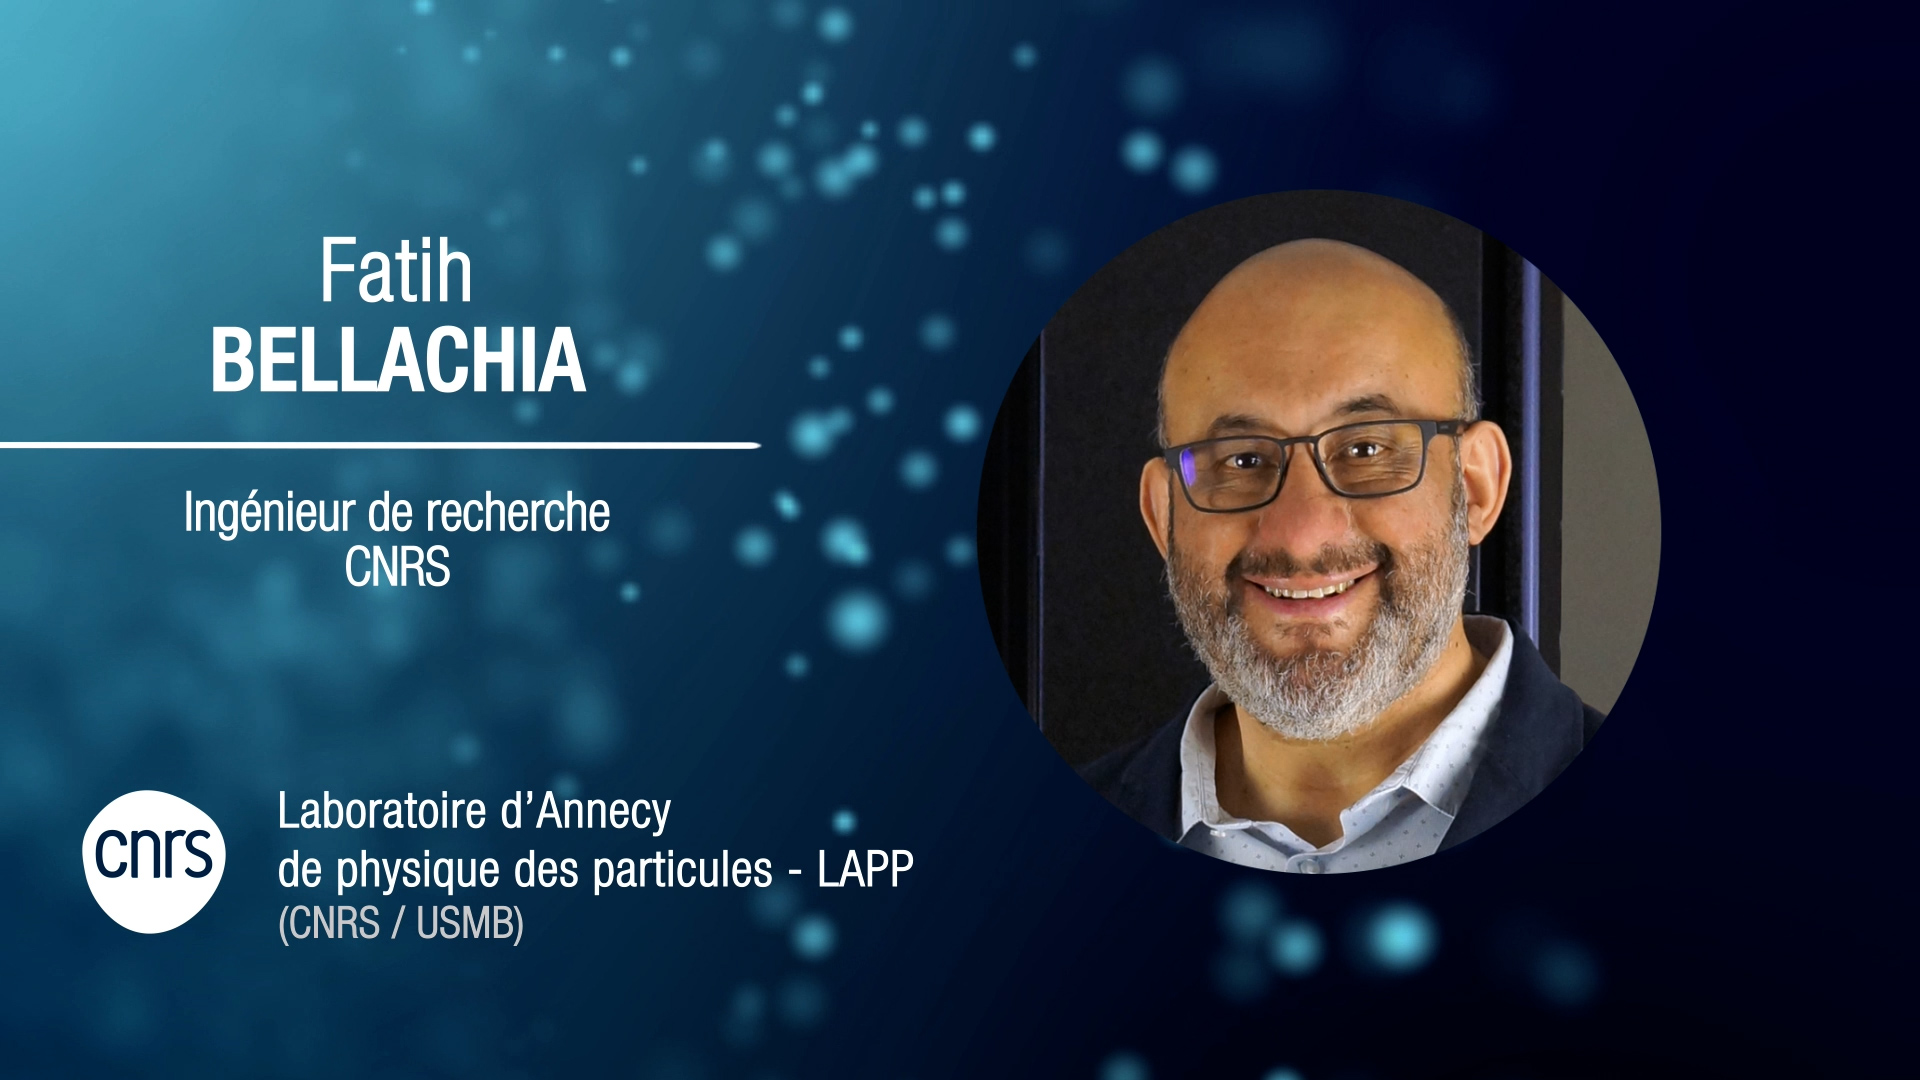 Fatih Bellachia, ingénieur de recherche CNRS en ingénierie logicielle pour la physique des particules au LAPP